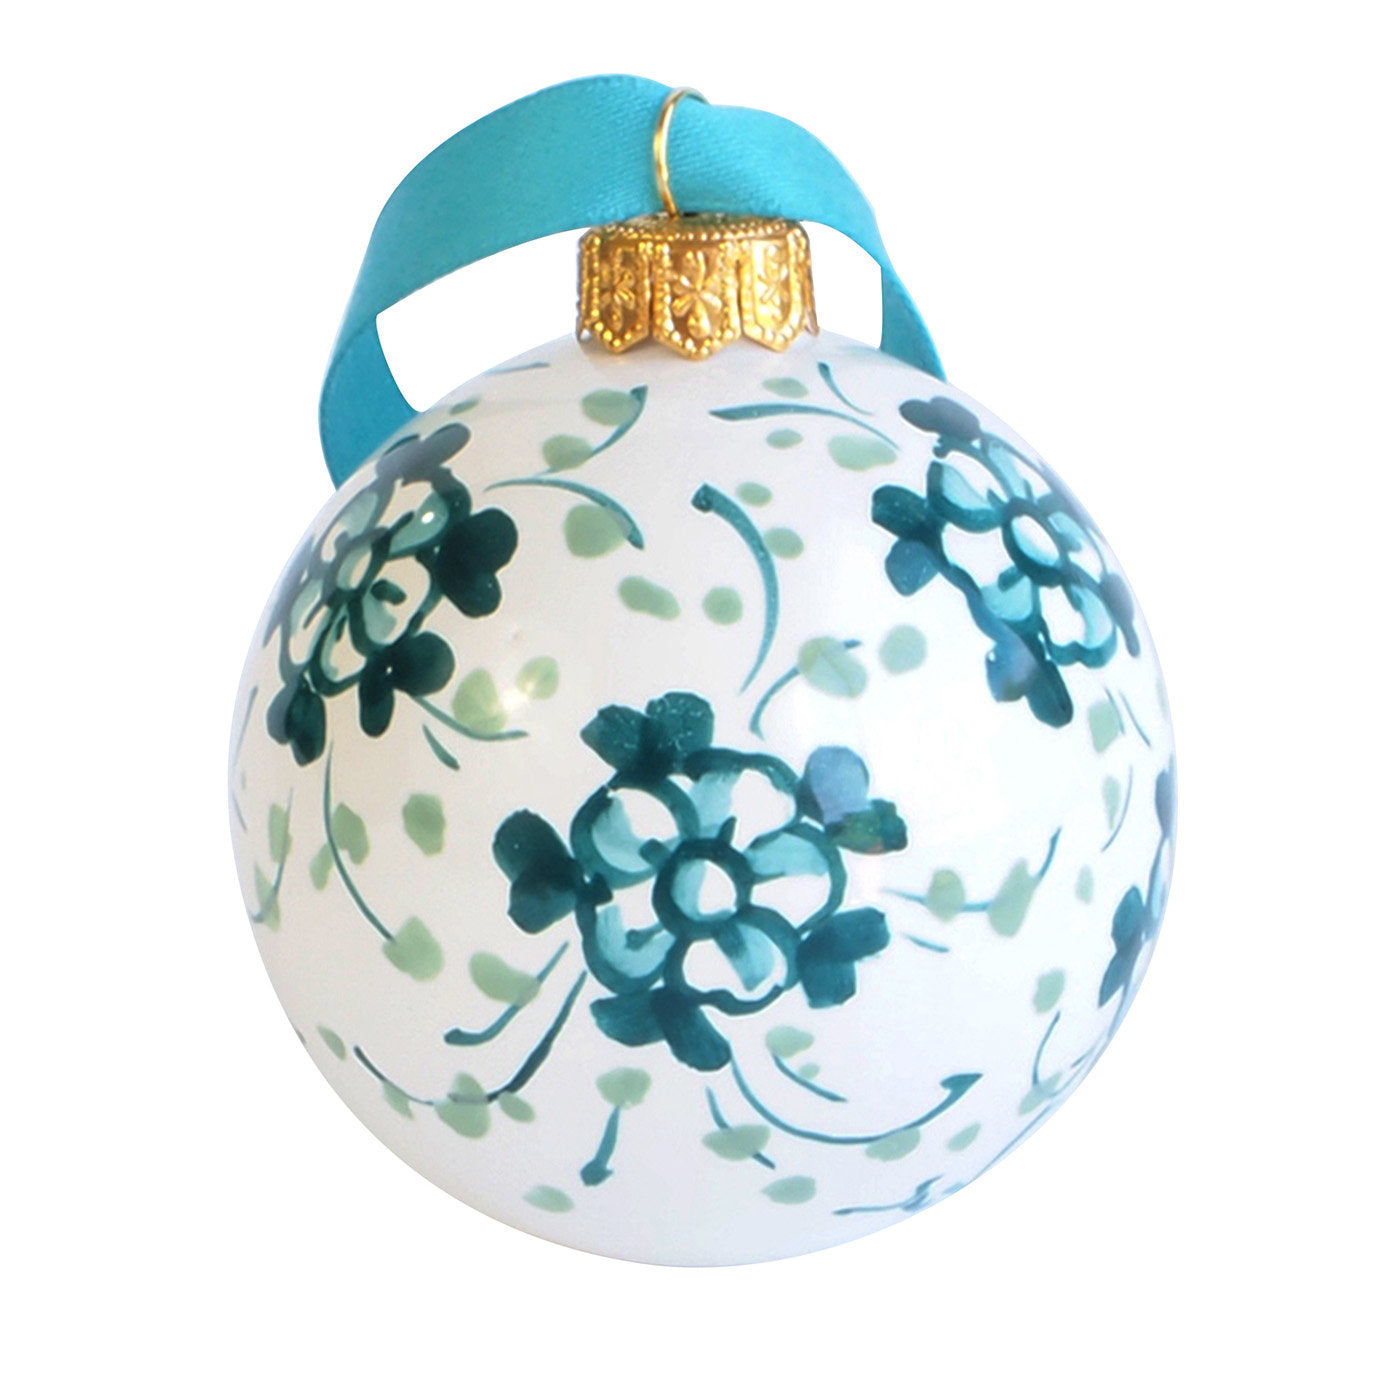 Türkisfarbene florale Weihnachtskugel Ornament #1 - Hauptansicht